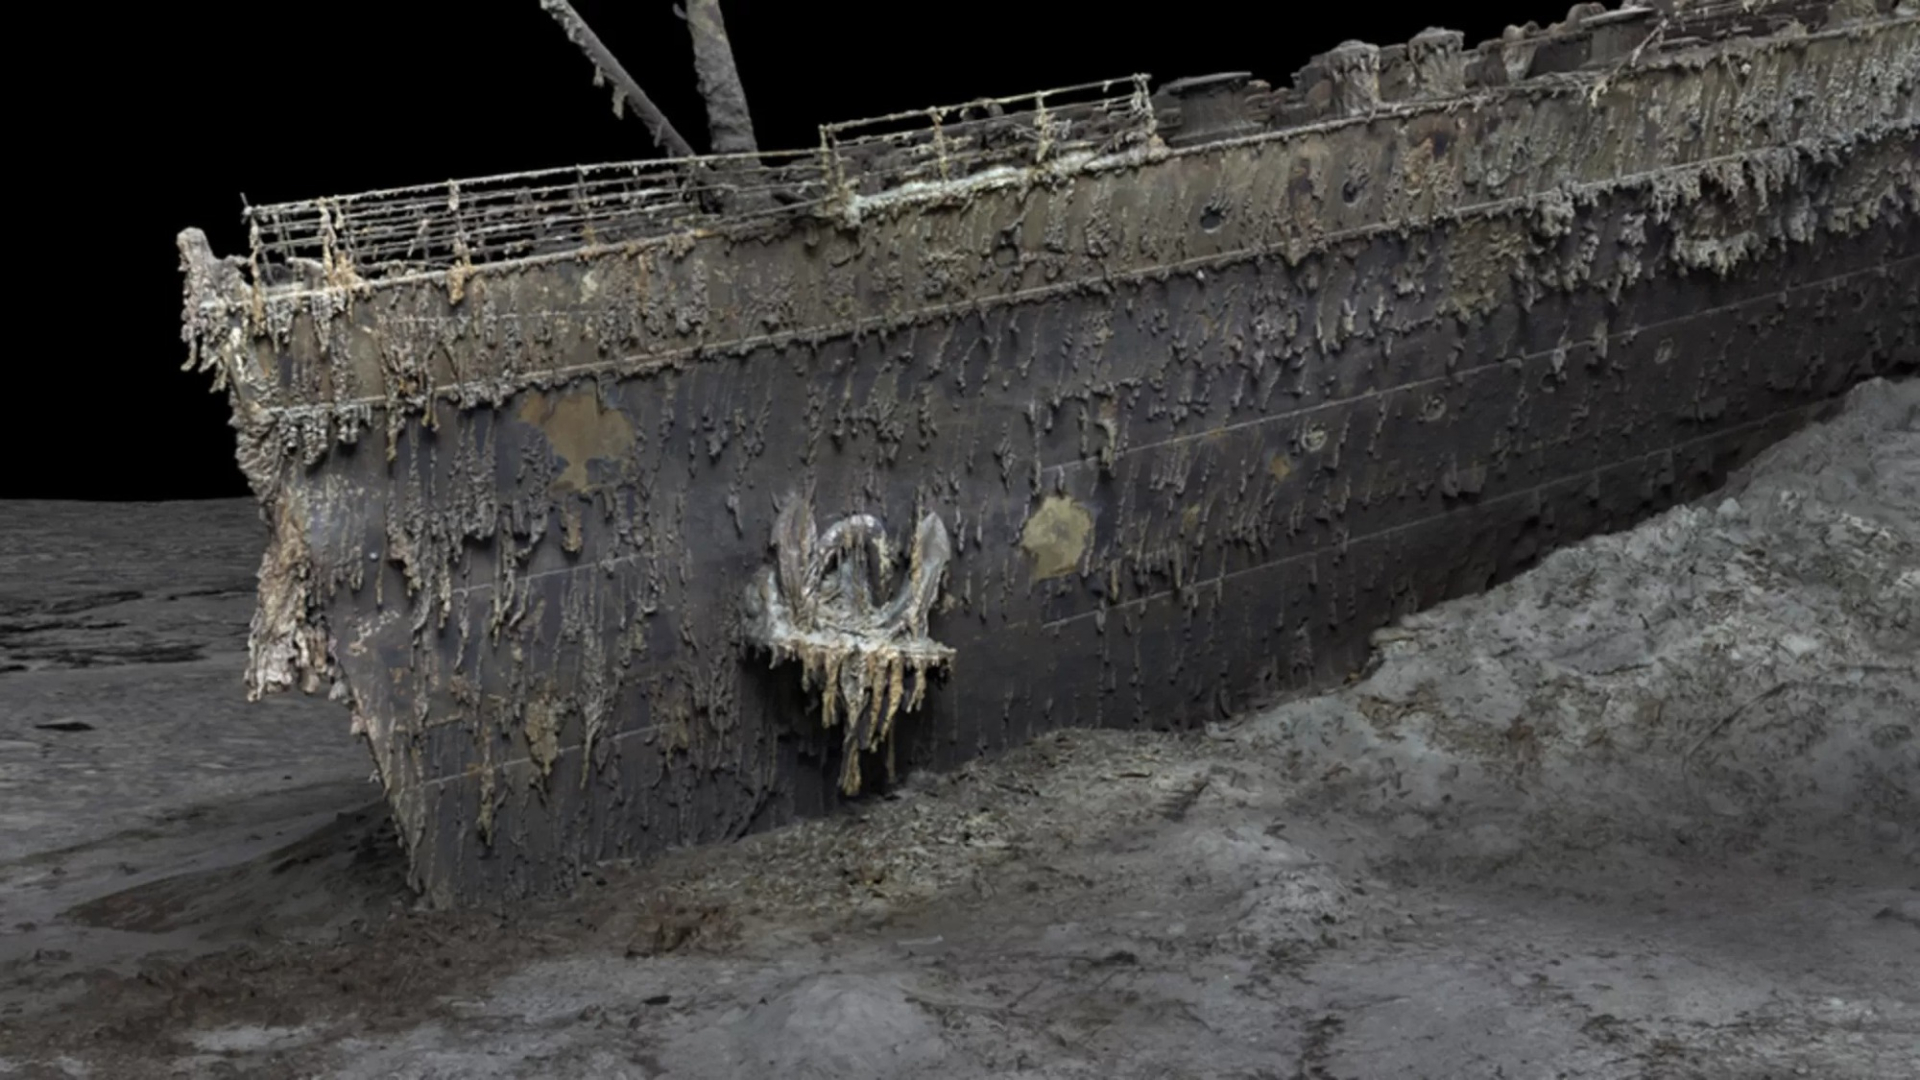 Vợ người lái tàu ngầm đang bị mất tích trong tour ngắm xác tàu Titanic là hậu duệ của đôi Titanic nổi tiếng đời thực - ảnh 1